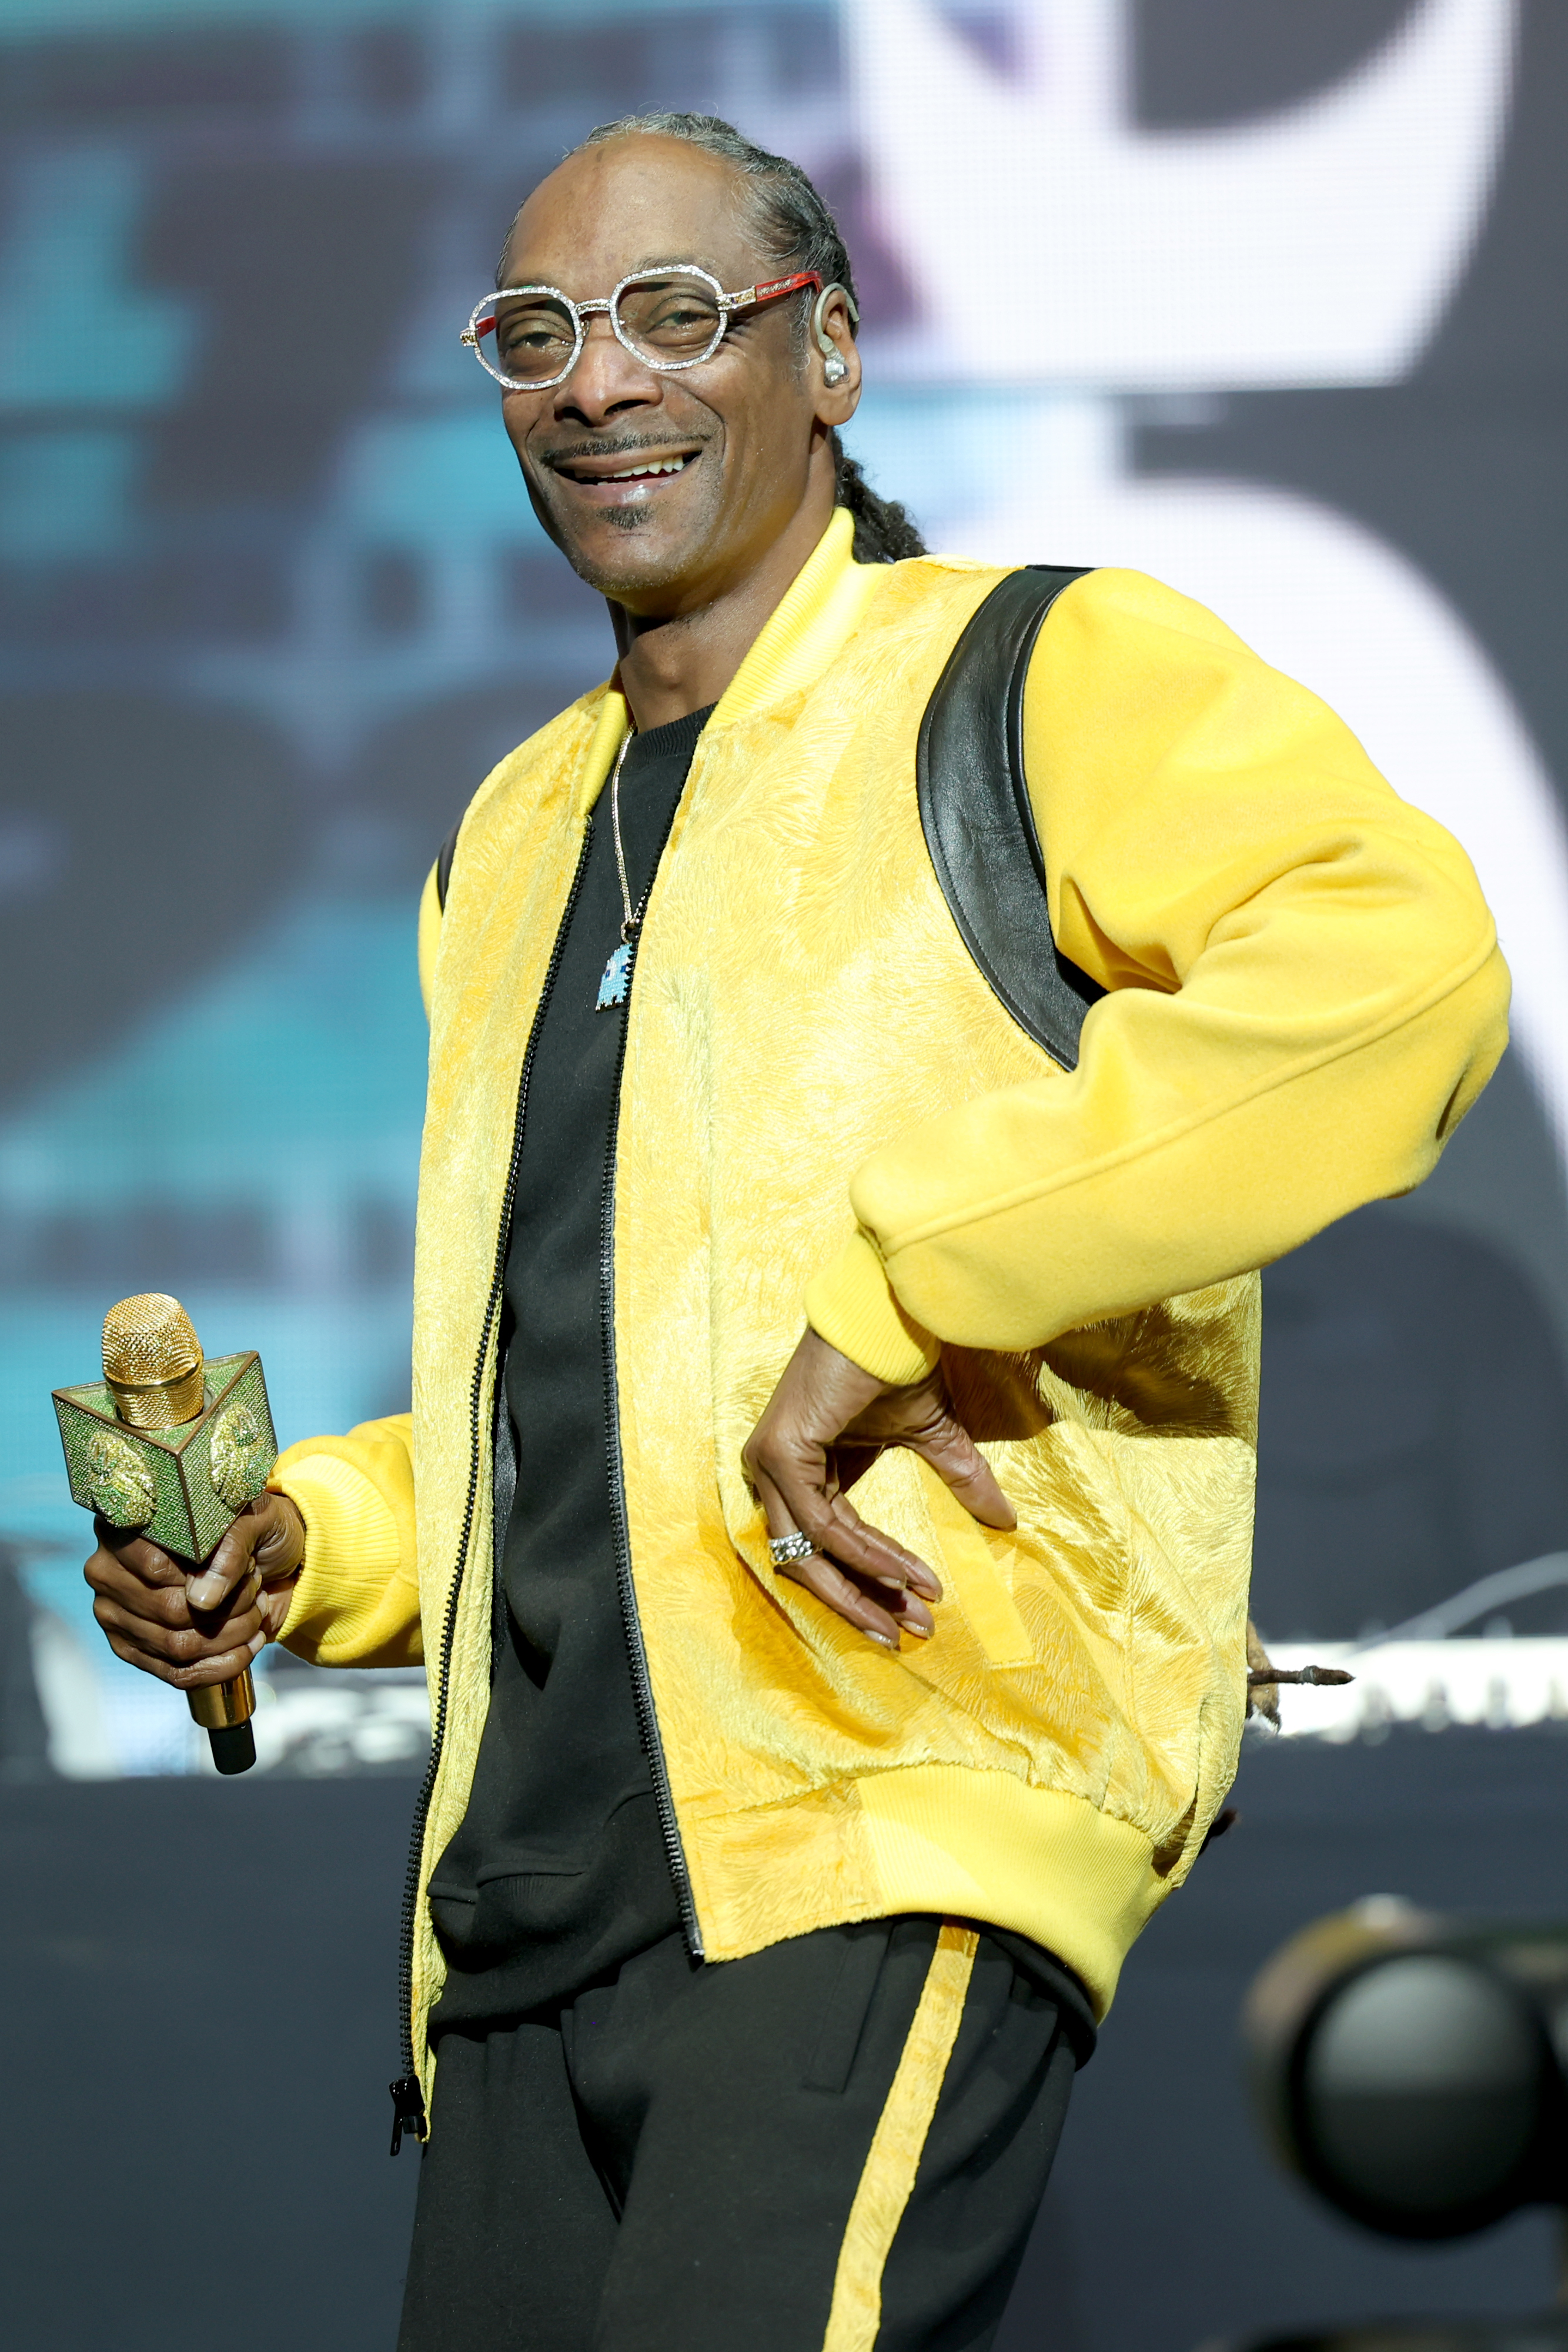 Snoop Dogg at 50